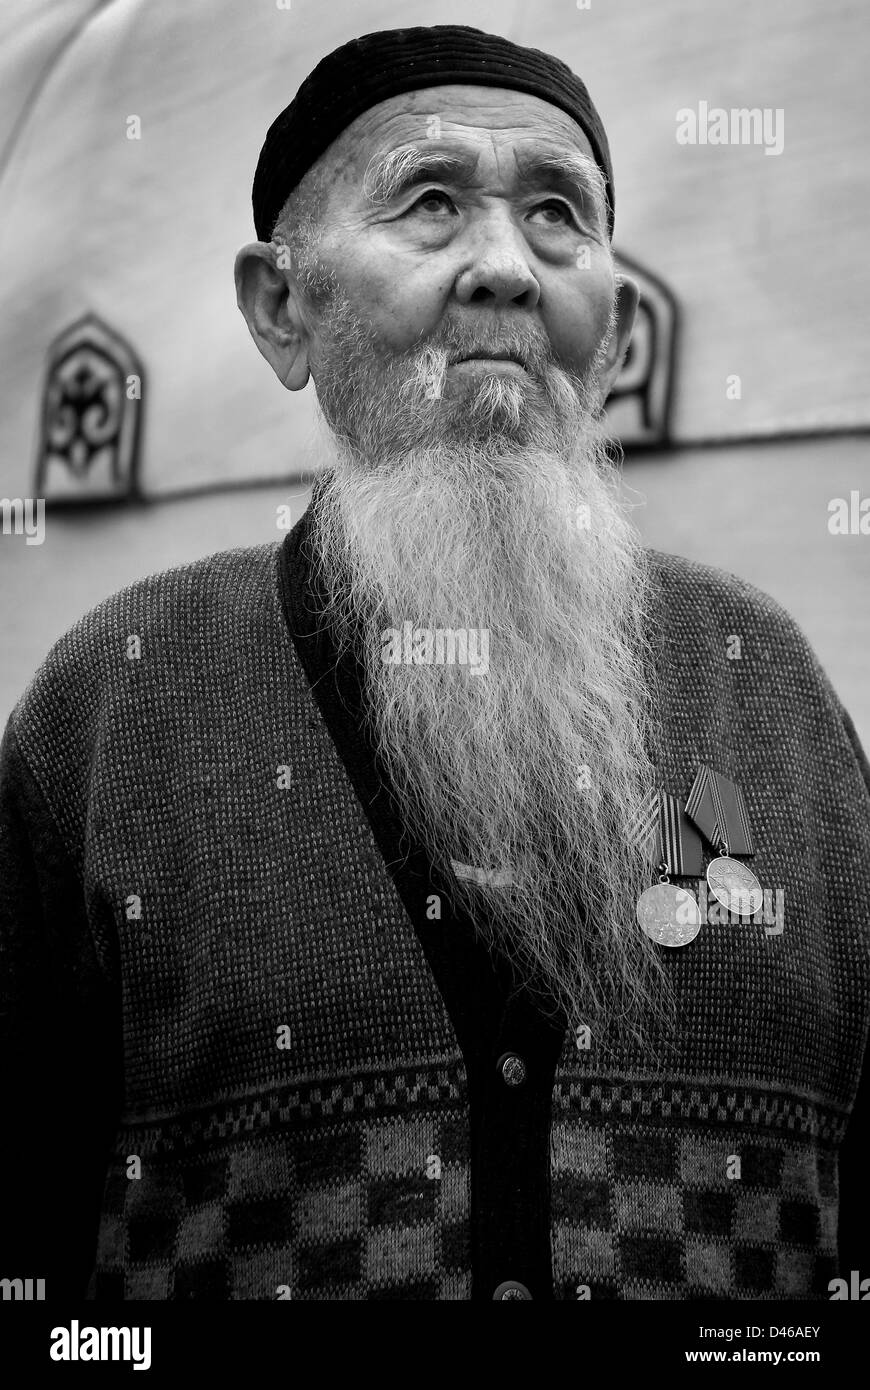 War veteran, Almaty, Kazakhstan Stock Photo